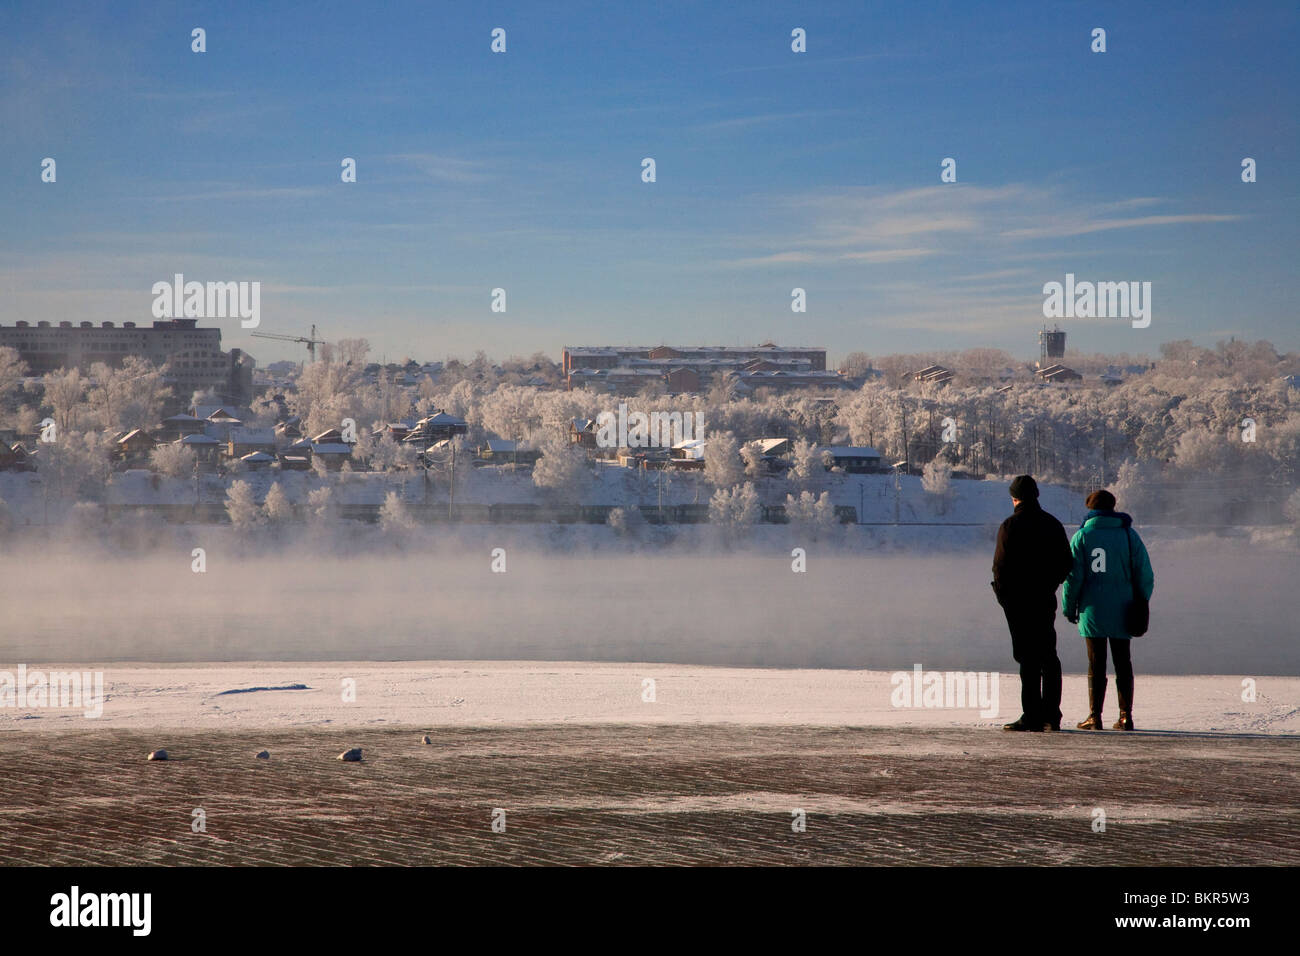 La Russia, Siberia, Irkutsk; guardando la nebbia sul fiume Angara, a causa della temperatura dell'aria essendo più freddo dell'acqua. Foto Stock